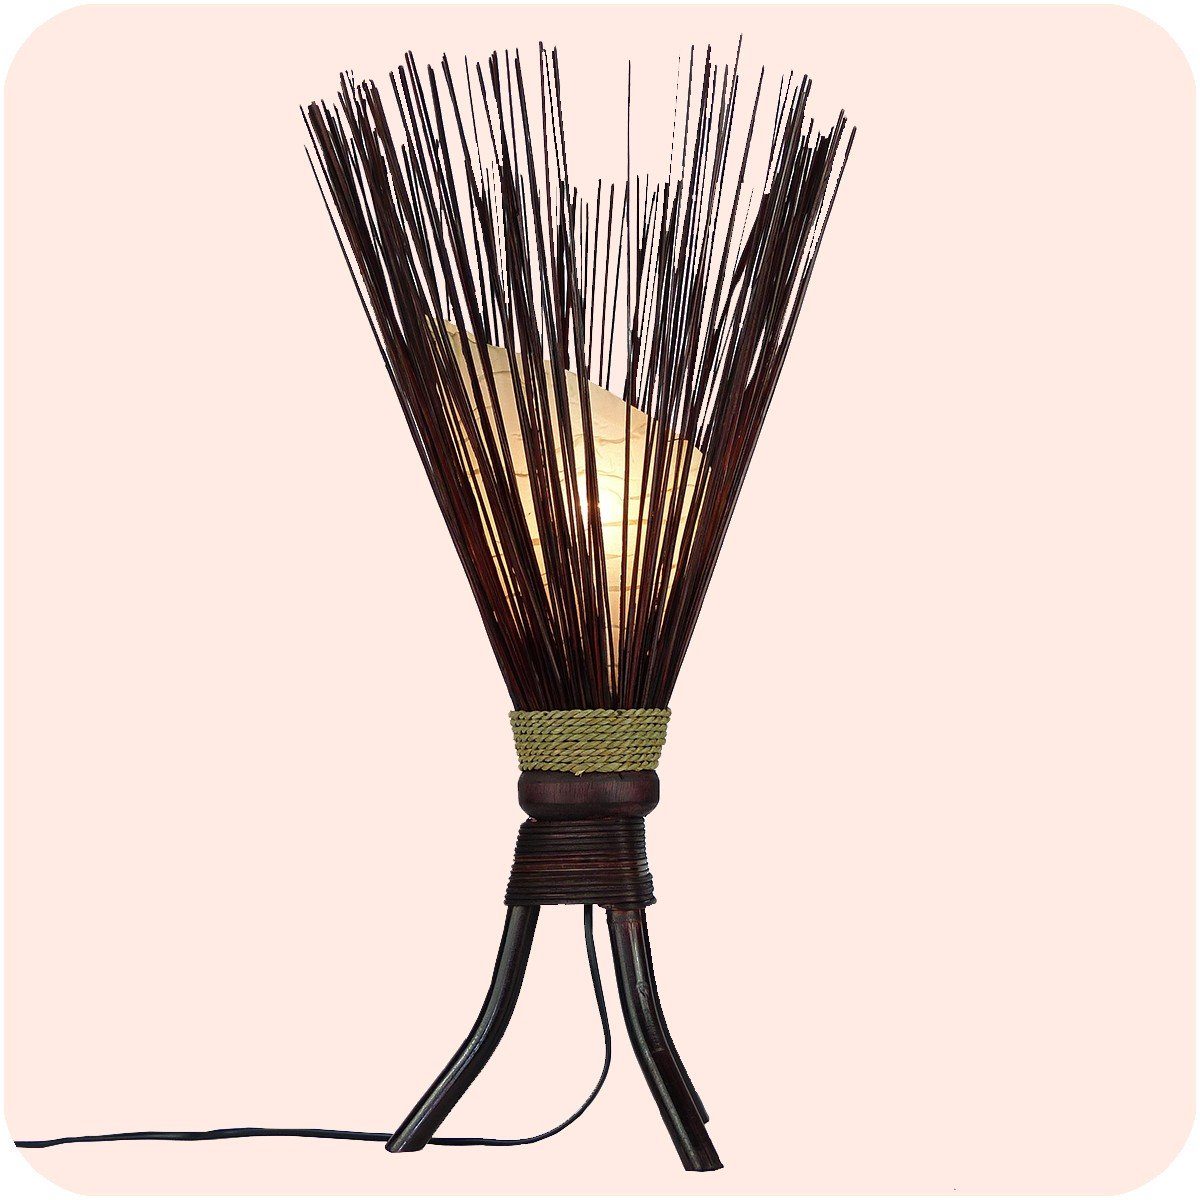 SIMANDRA Stehlampe Jungel, Ambilight, ohne Leuchtmittel, Tageslichtweiß, Warmweiß, 60 x 35 cm Bali asiatische Lampe aus Naturmaterial